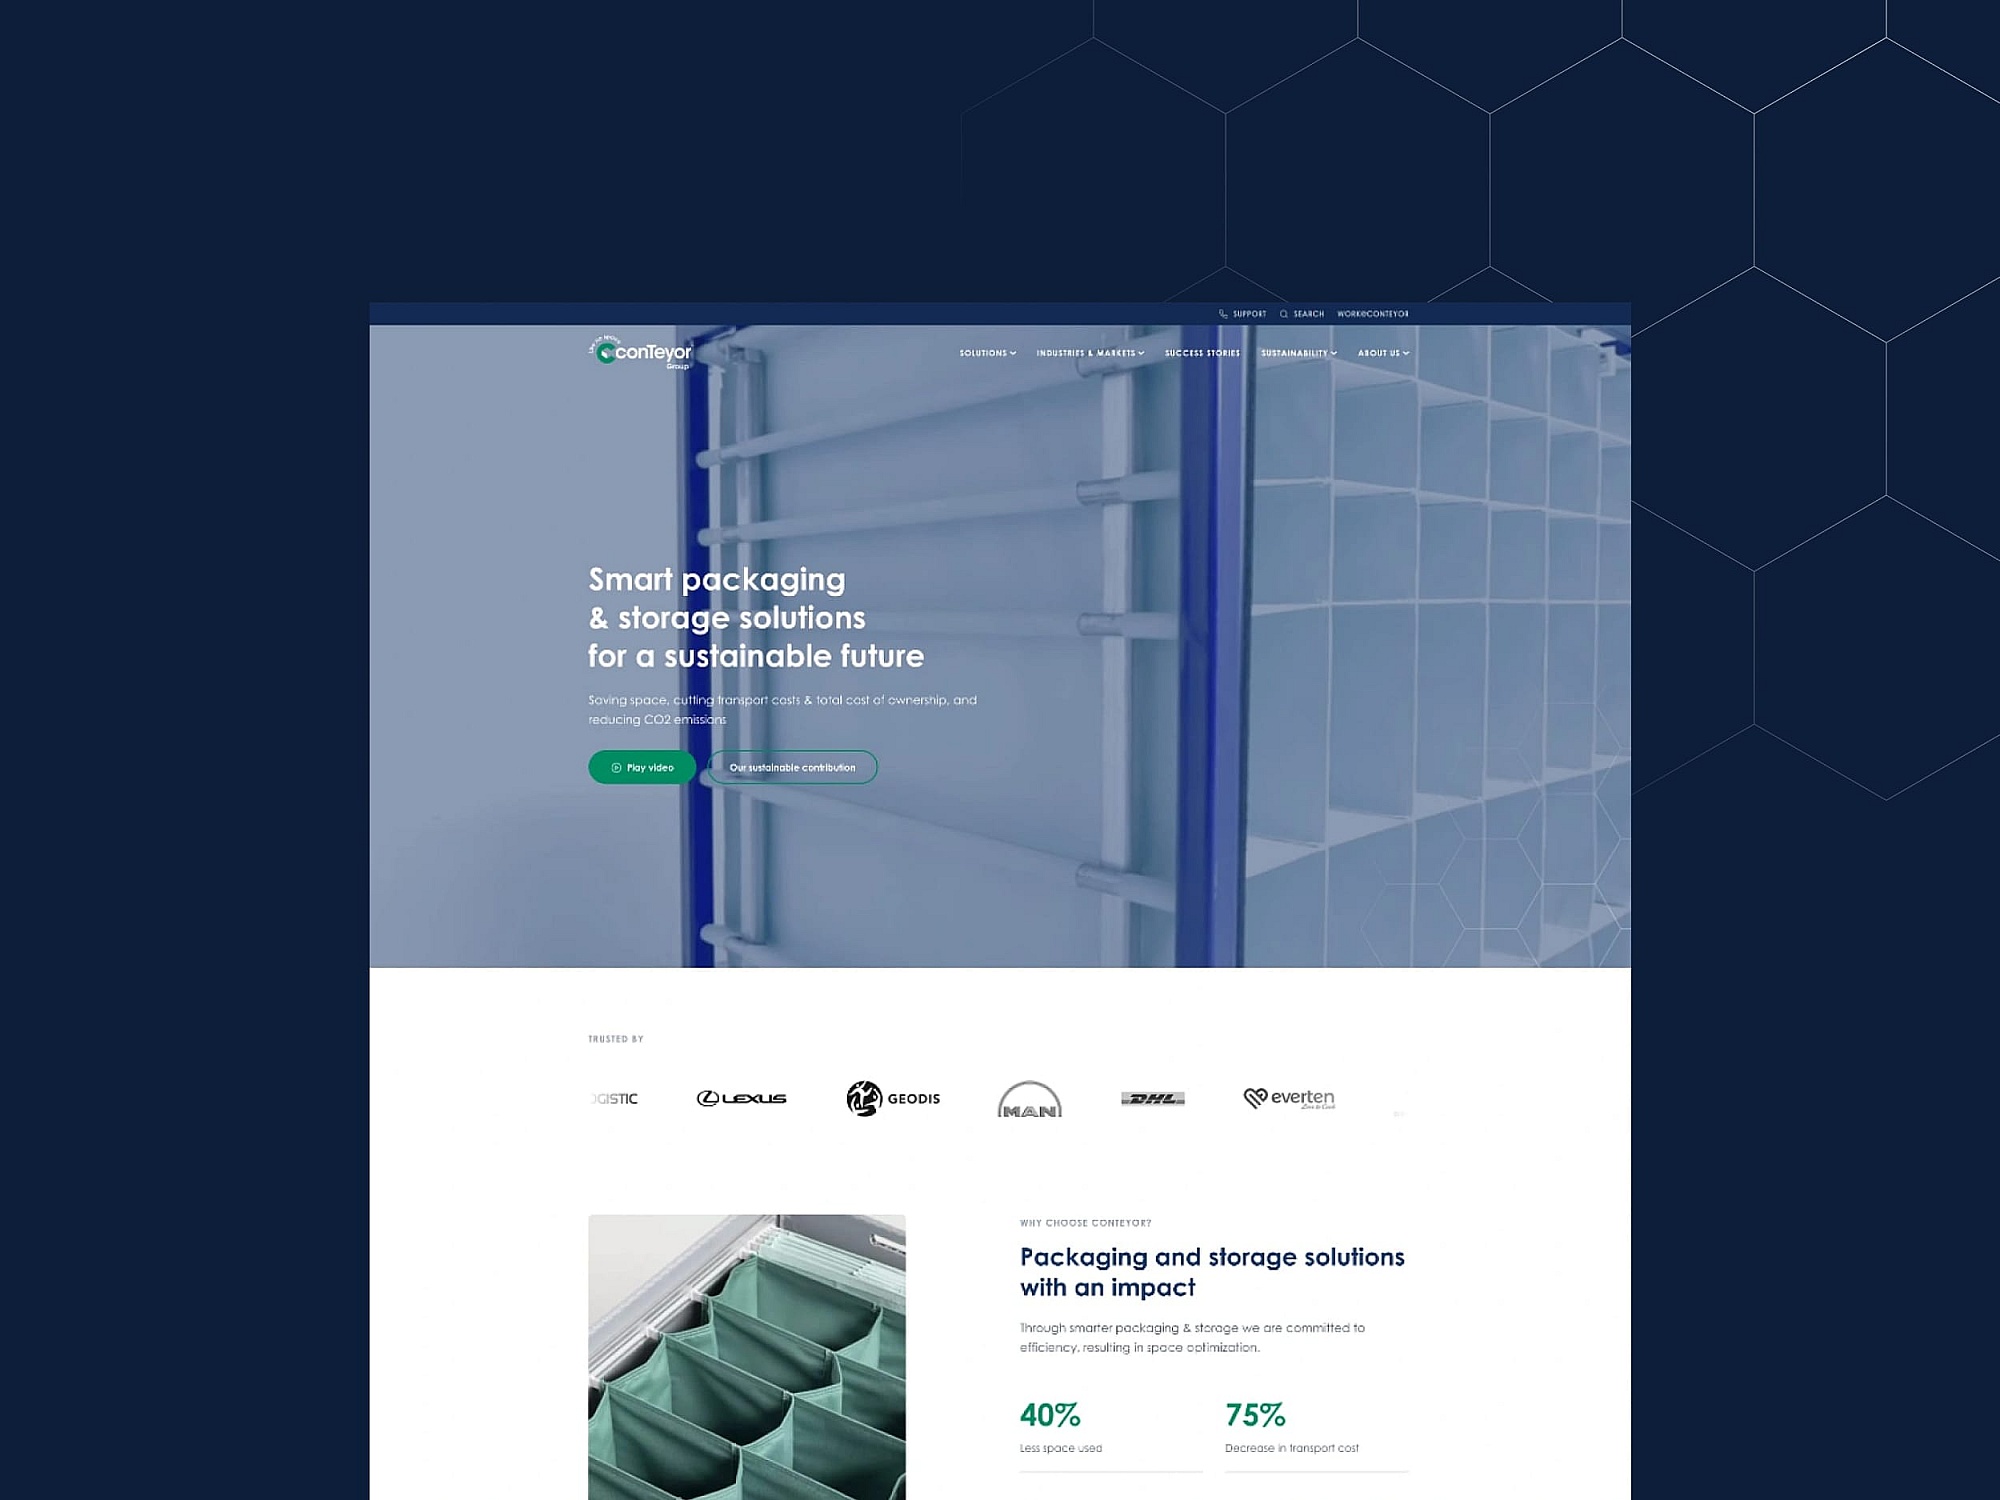 Screenshots van (details van) de website die conTeyor liet maken door Heave Webdesign Antwerpen